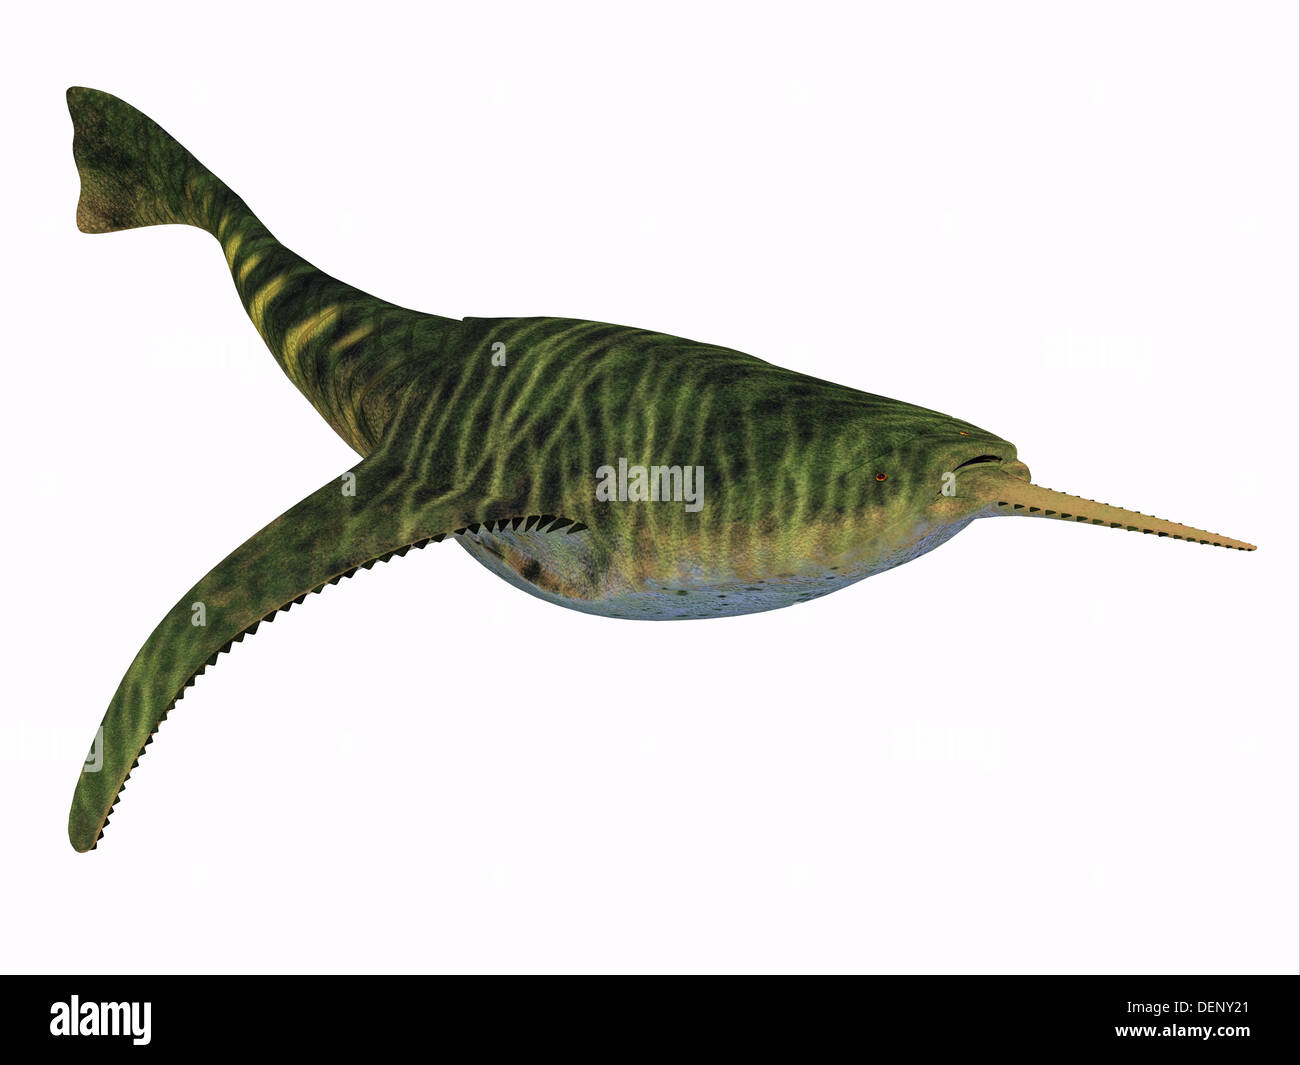 Doryaspis es un género extinto de peces jawless primitivo que vivió en el Período Devoniano. Foto de stock